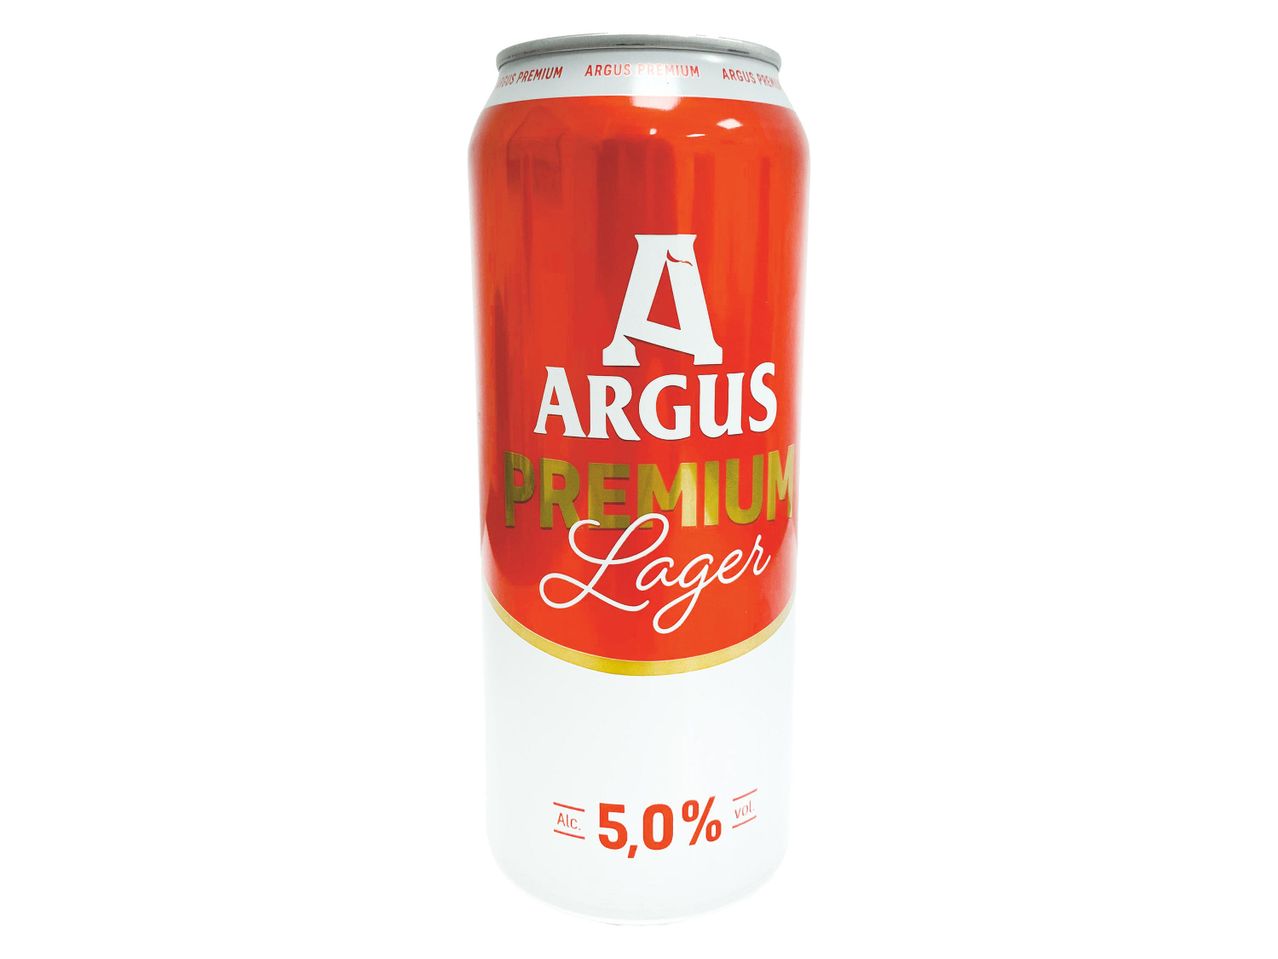 Accesați vizualizarea pe ecran complet: Argus Premium - bere blondă, alc. 5,0% vol. - Imagine 1